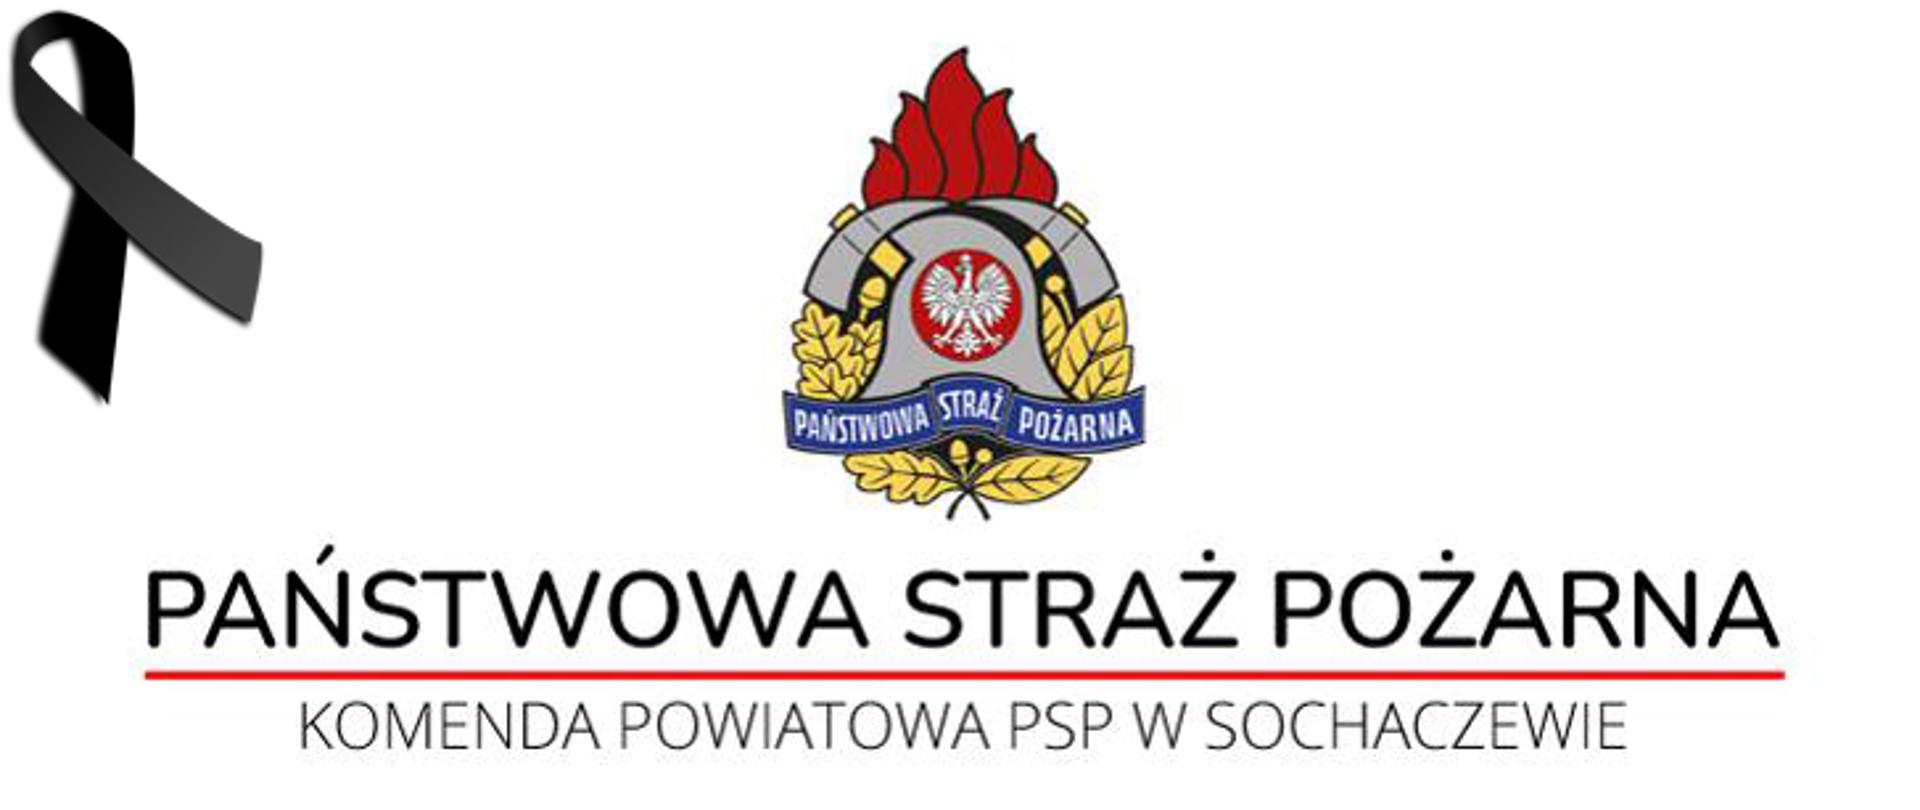 Logo PSP z podpisami - Państwowa Straż Pożarna oraz Komenda Powiatowa PSP w Sochaczewie. W lewym górnym rogu czarny kir.